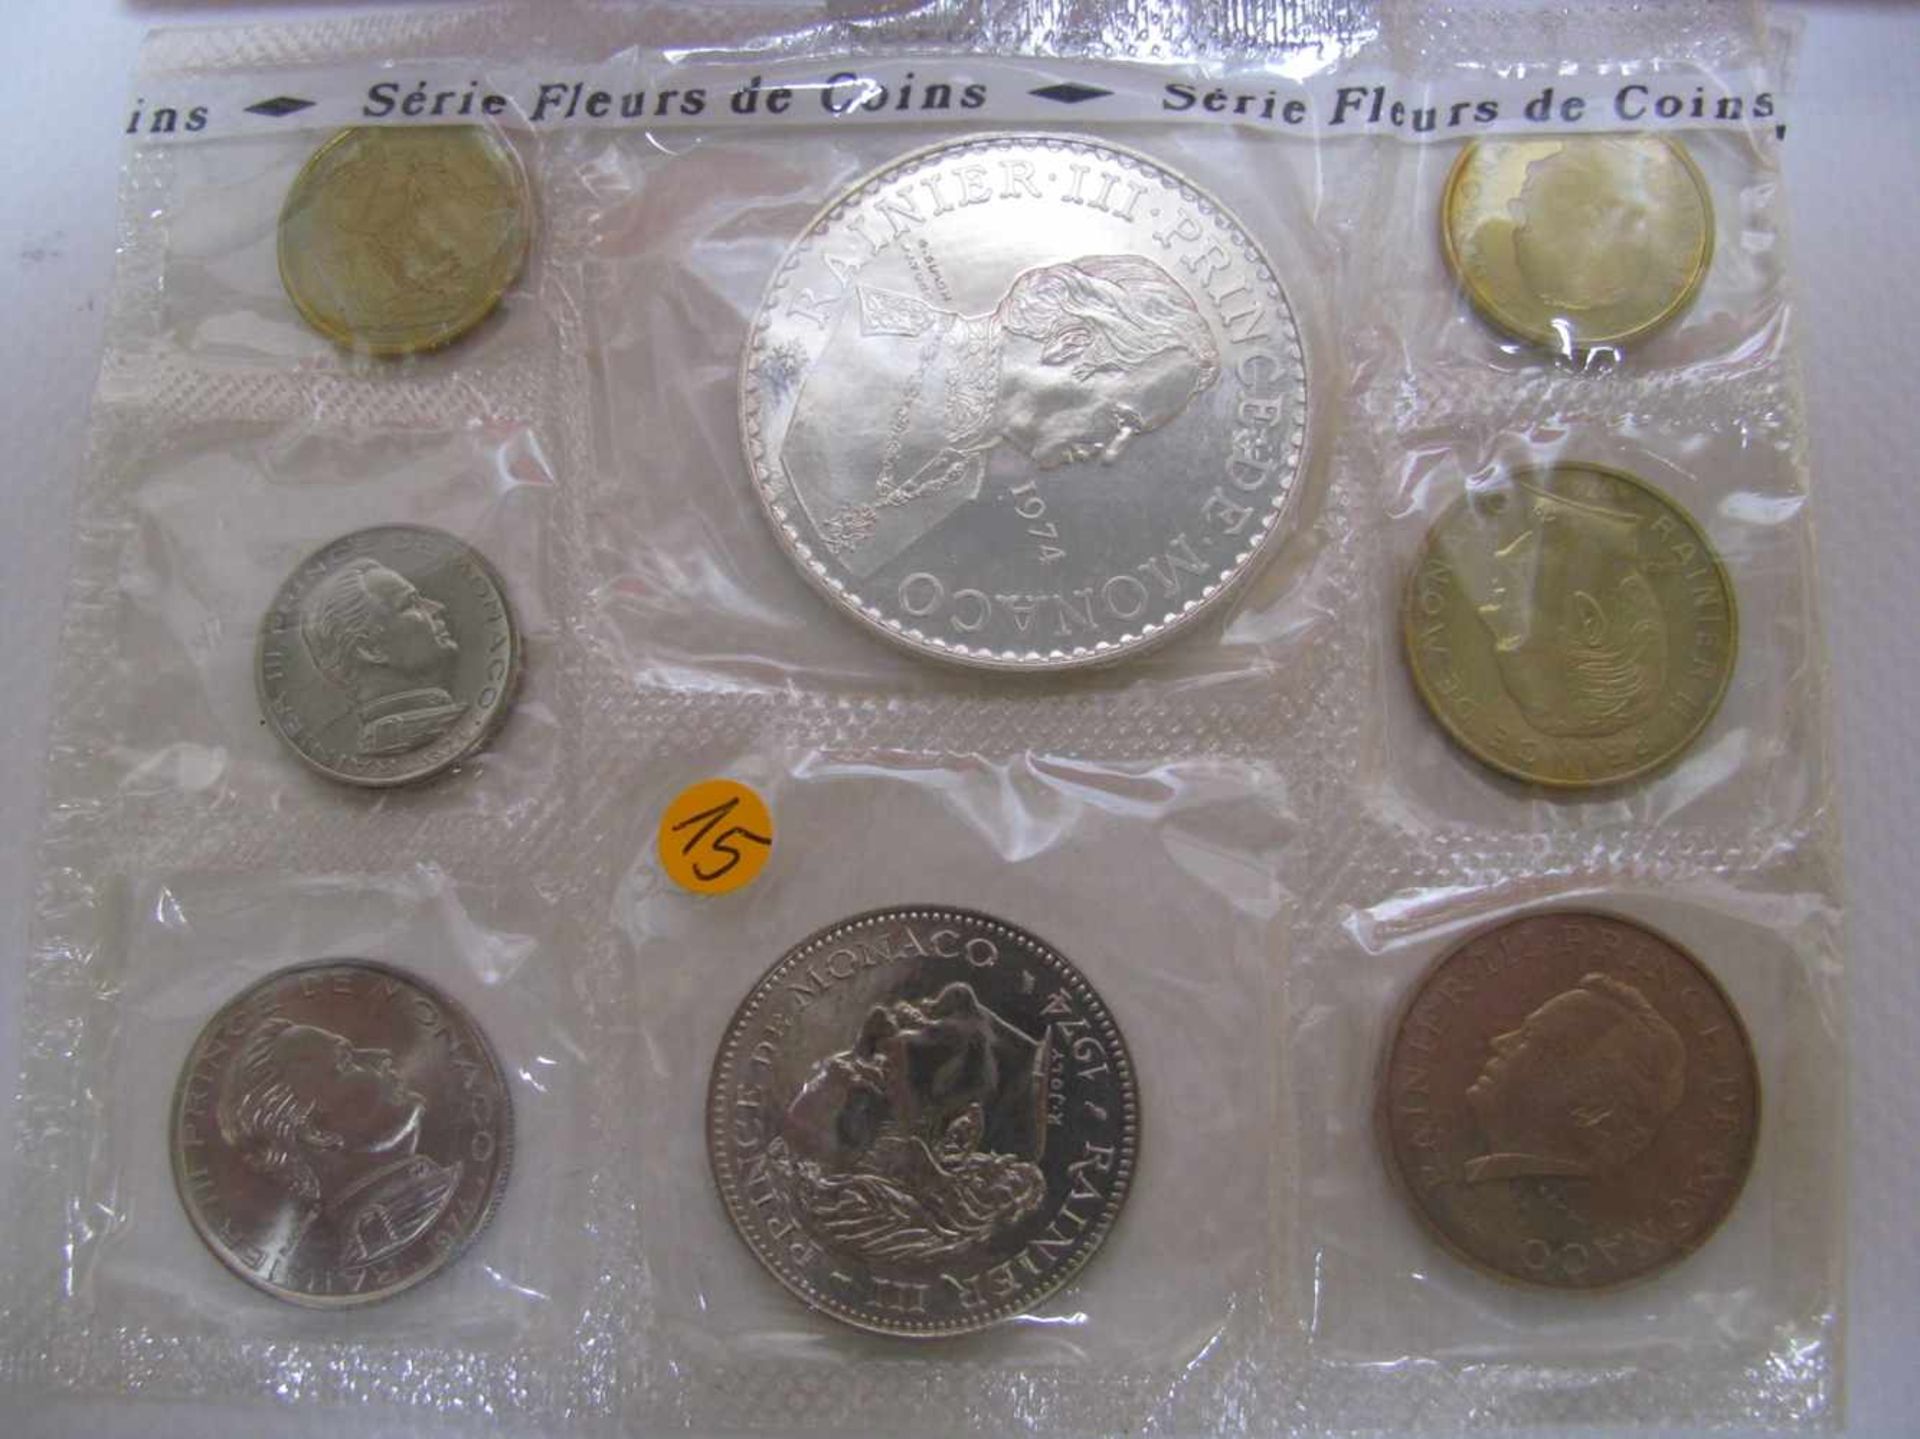 Münzsatz mit 8 Münzen, Rainier III. Fürst von Monaco, 25-jähriges Jubiläum, 1949 - 1974, Erstauflage - Bild 2 aus 2